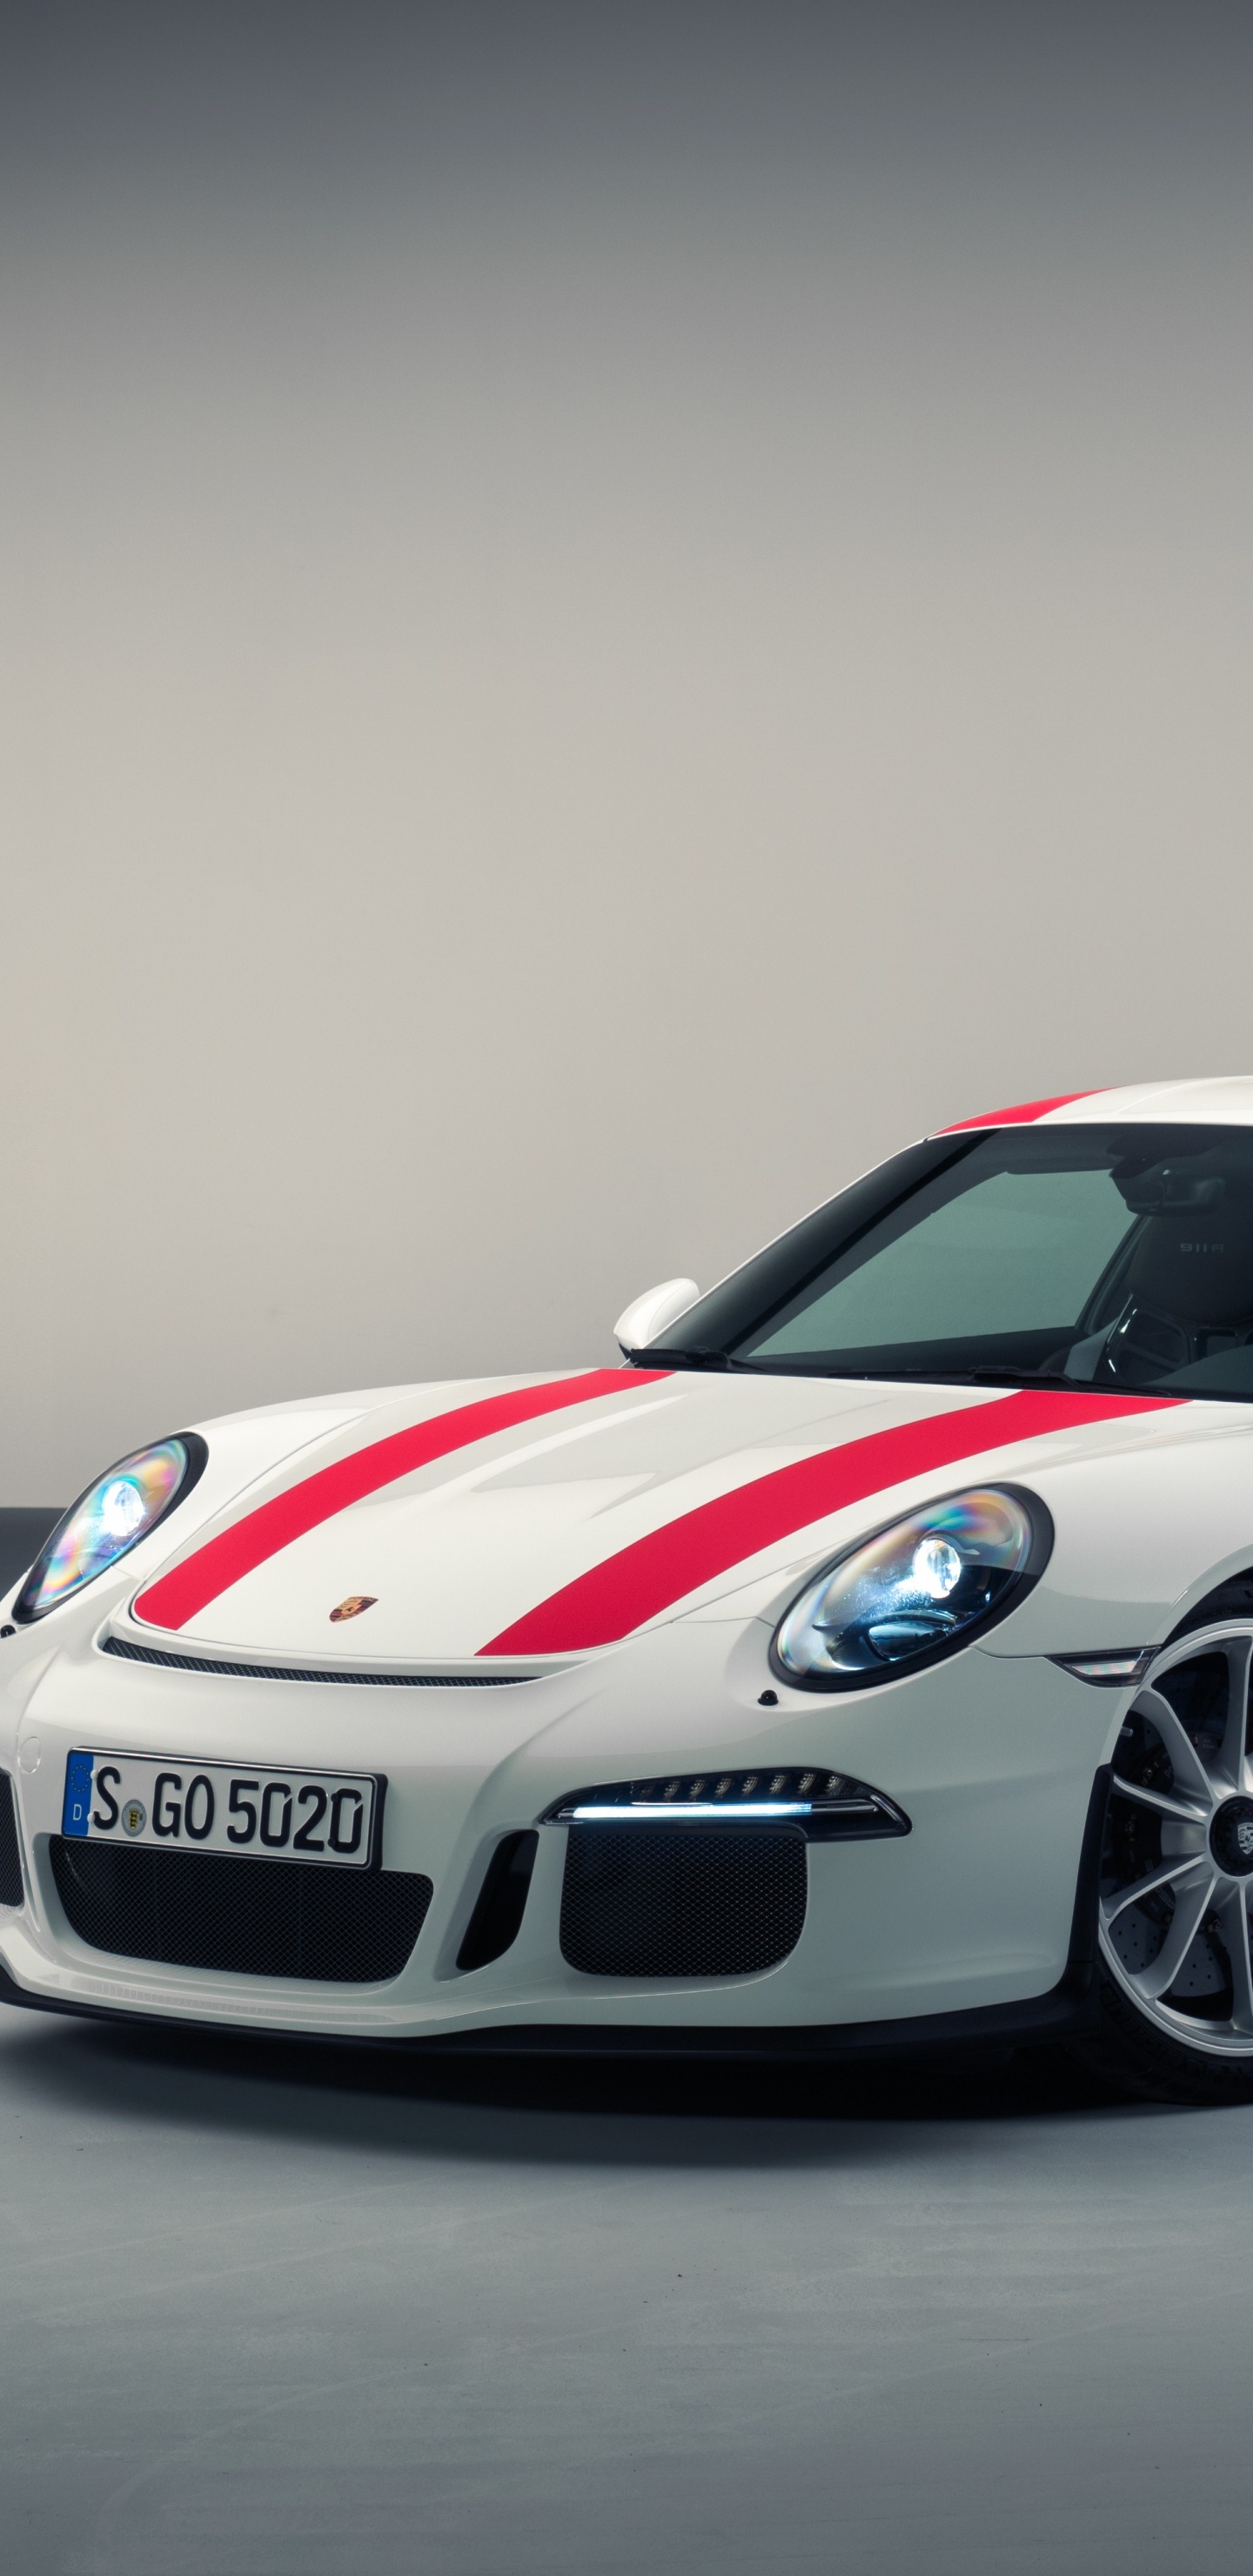 Weißer Und Roter Porsche 911. Wallpaper in 1440x2960 Resolution